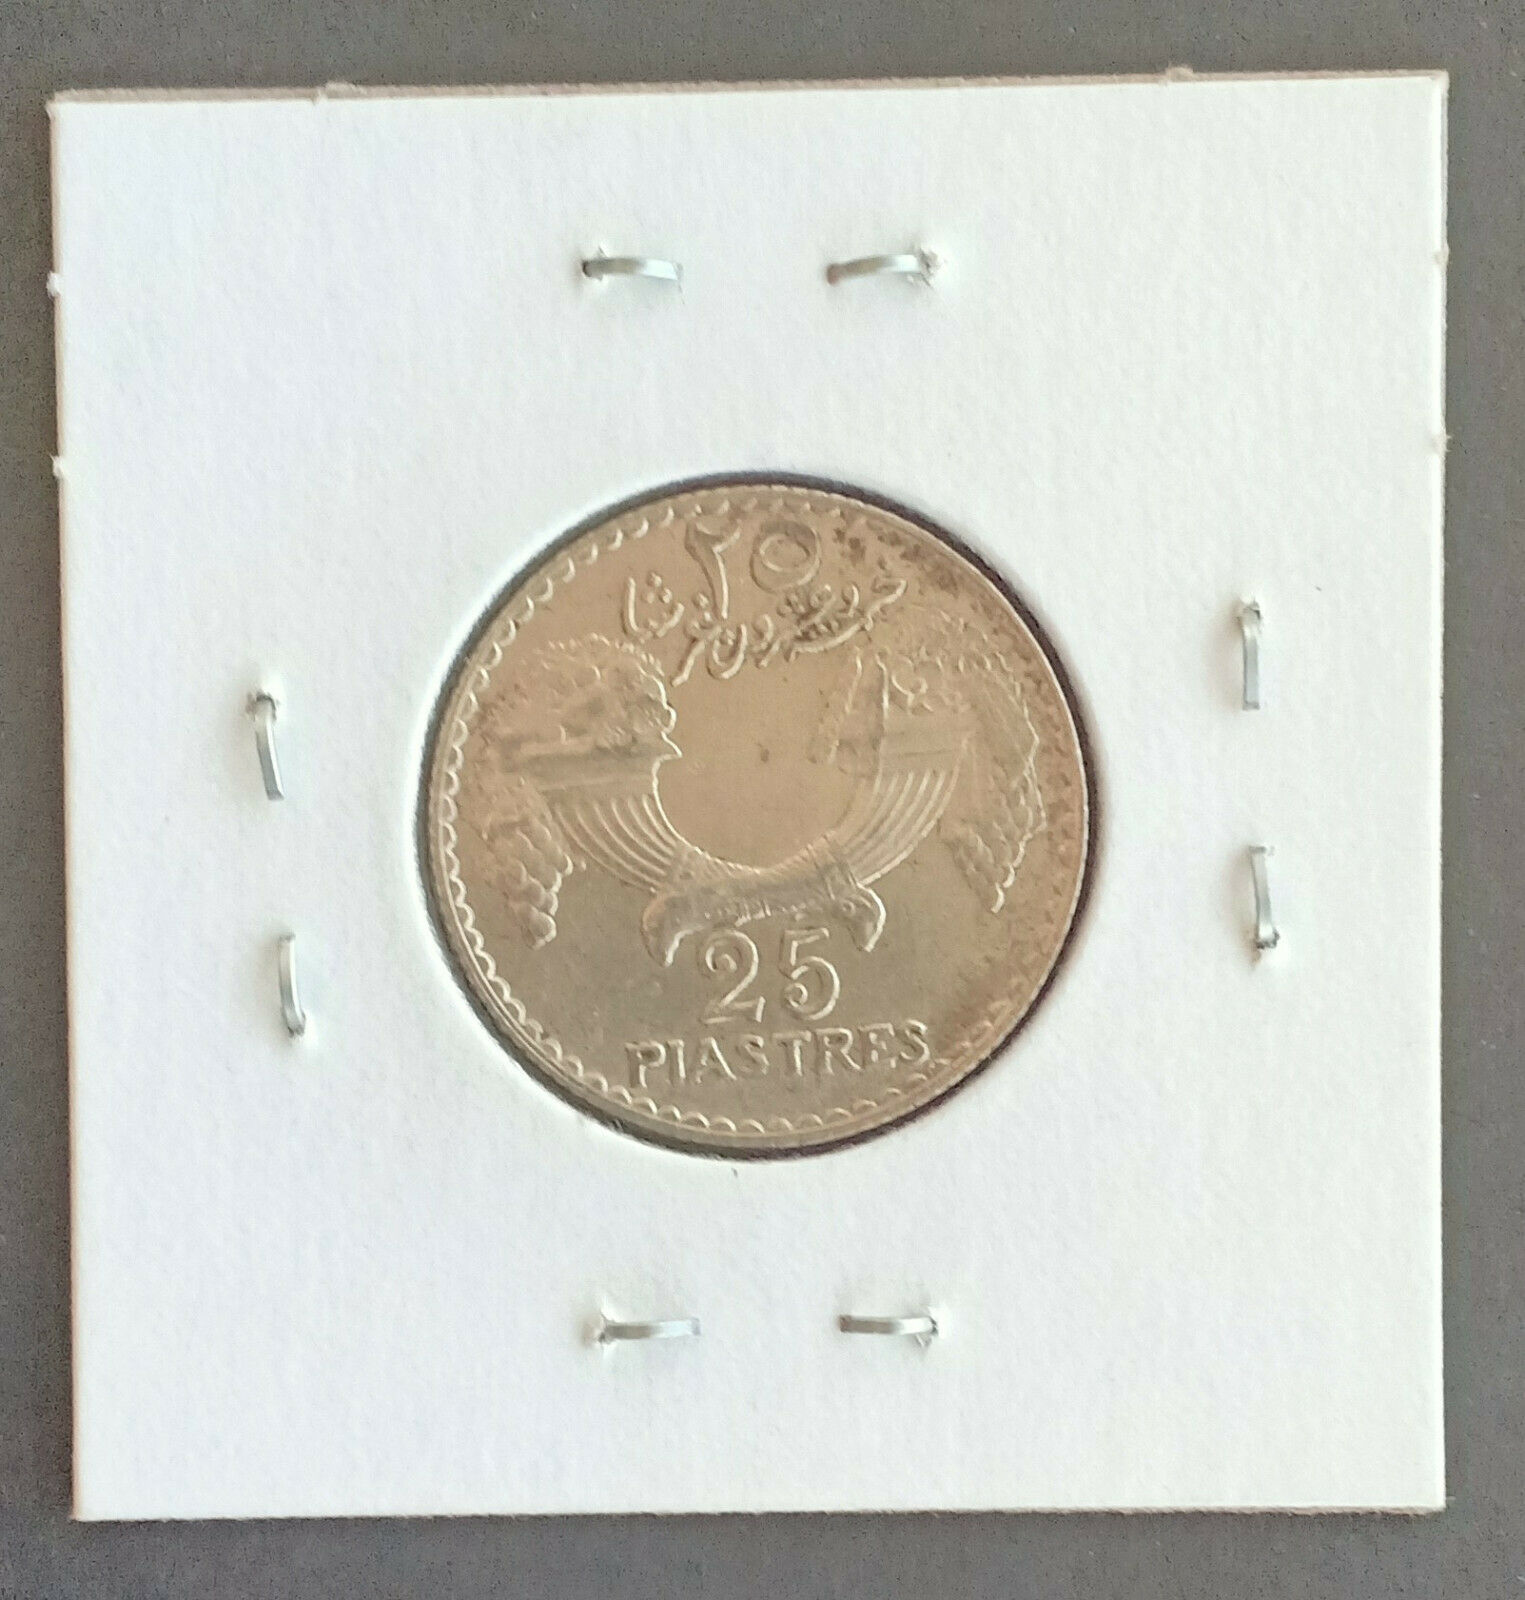 Lebanon 1929 25 Piastres Silver Coin - Rare Very High Grade